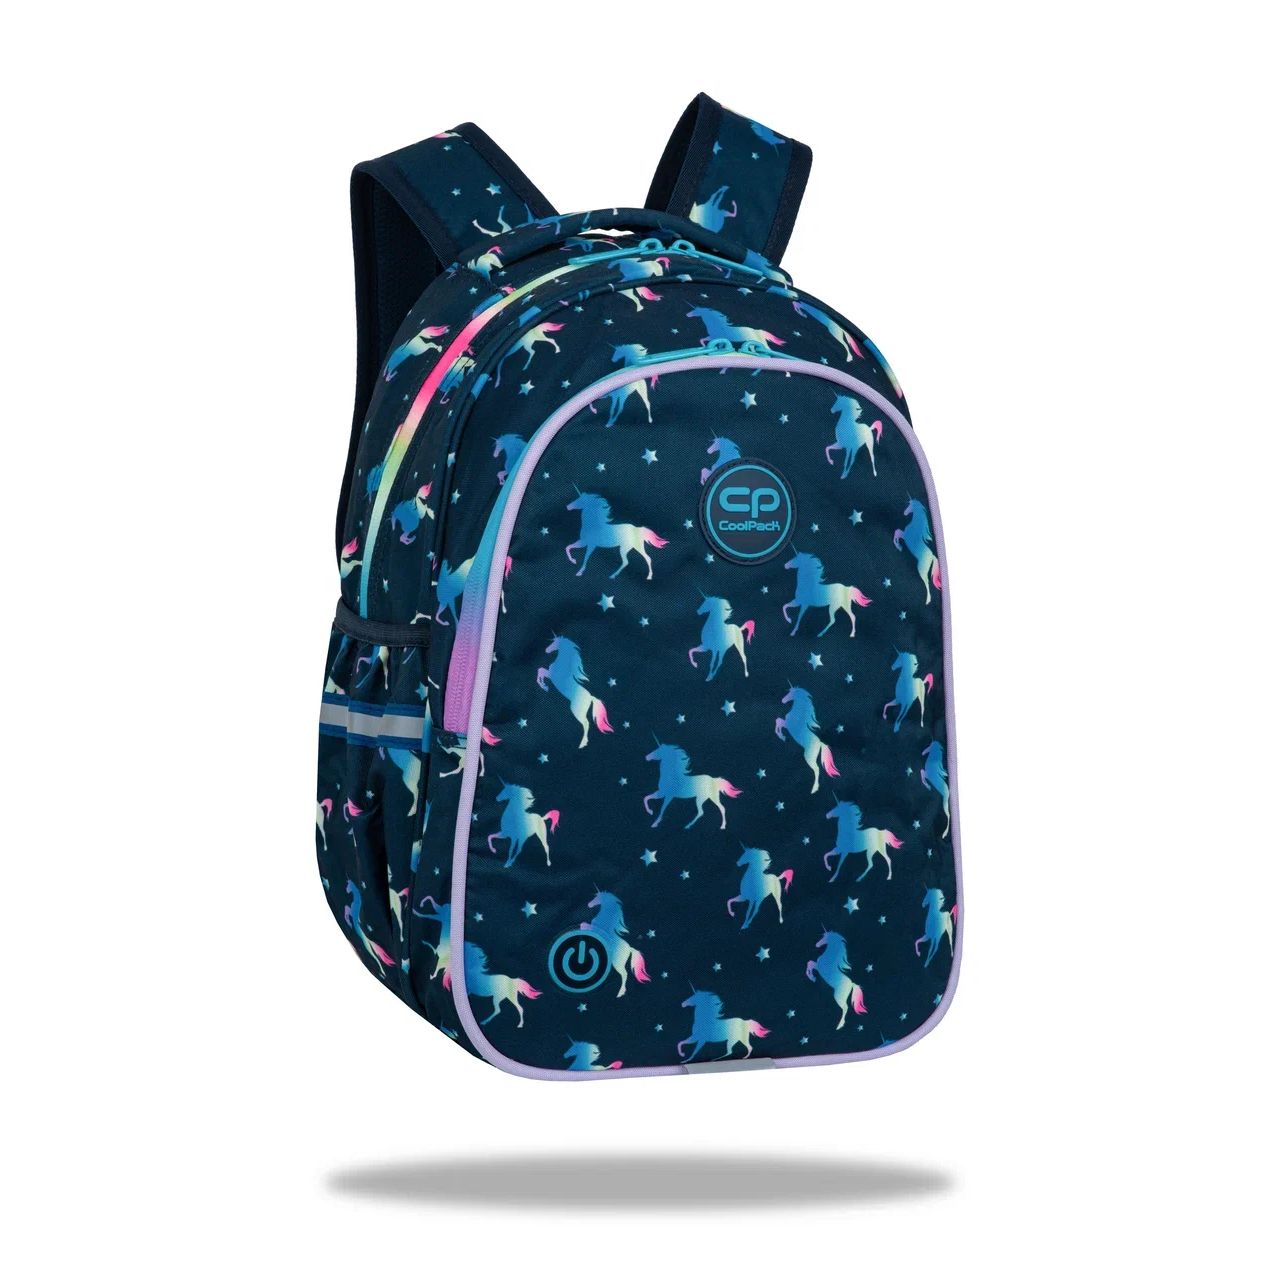 Рюкзак школьный Сool Pack LED, 39х28х17 см, 2 отделения, светодиодная подсветка рюкзак школьный сool pack jerry gradient frape 39х28х15 см 21 л 2 отделения